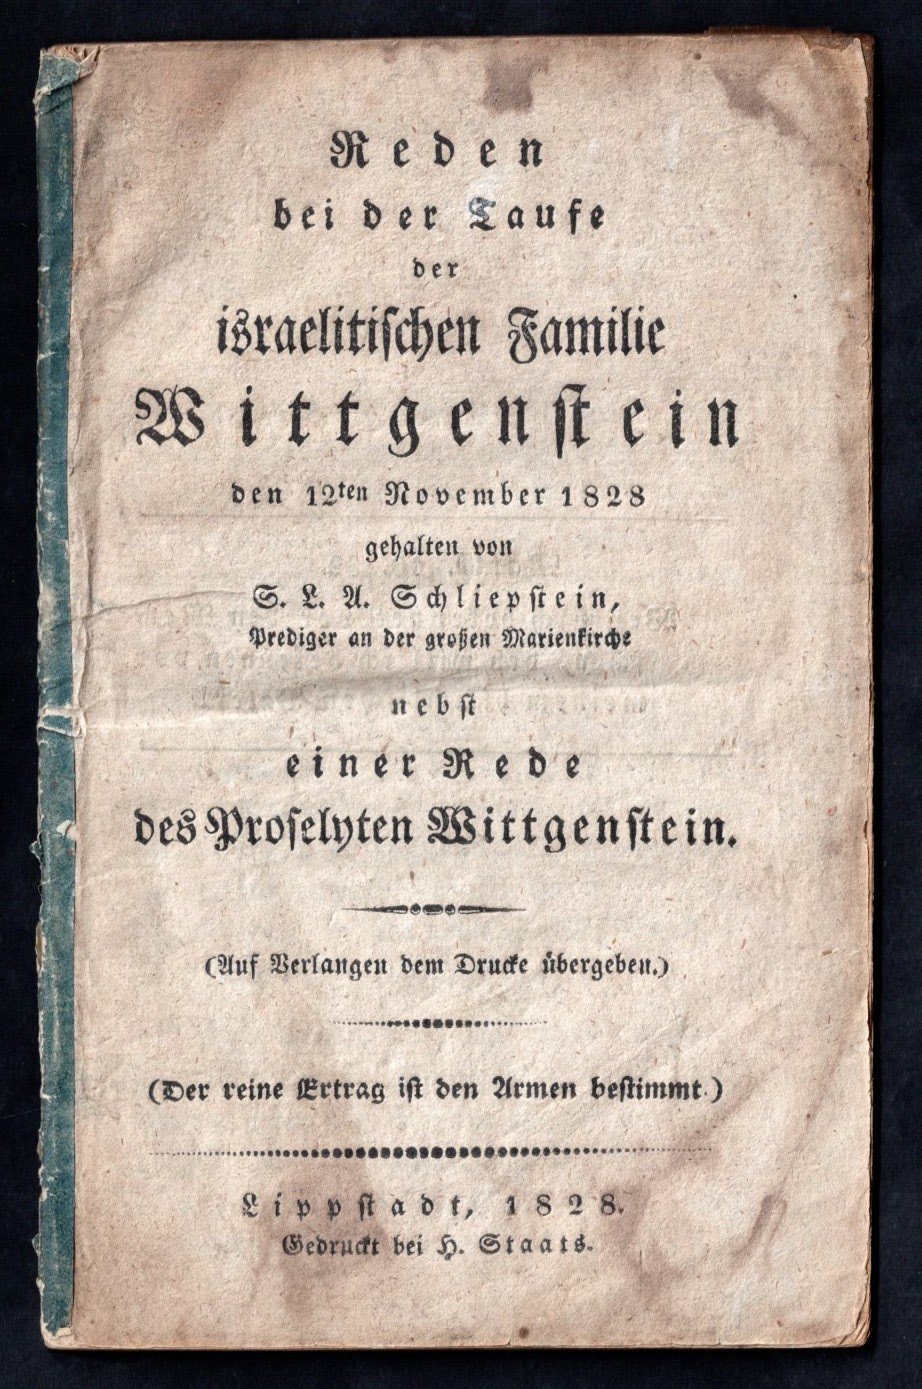 Broschüre: Schliepstein, S.L. A.; Reden bei der Tante der israelischen Familie Wittgenstein ... (Stadtmuseum Lippstadt RR-F)